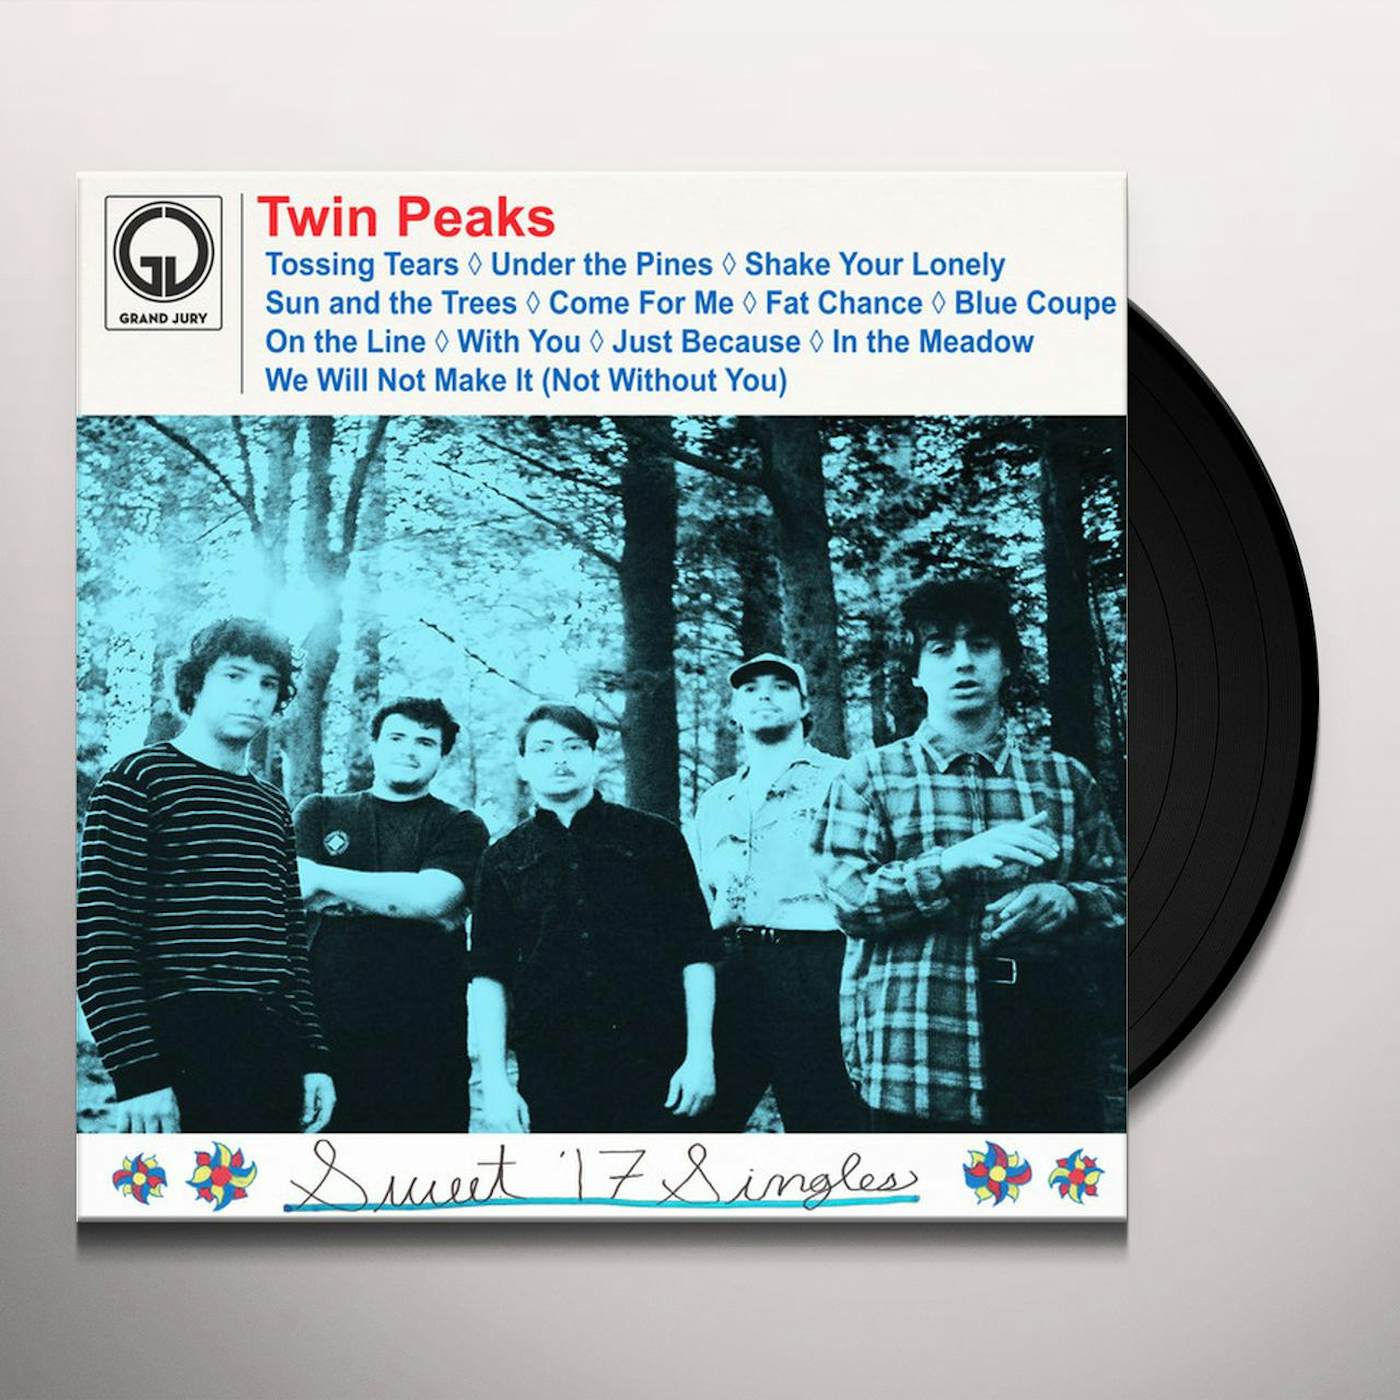 Twin Peaks Sweet '17 Singles Vinyl Record